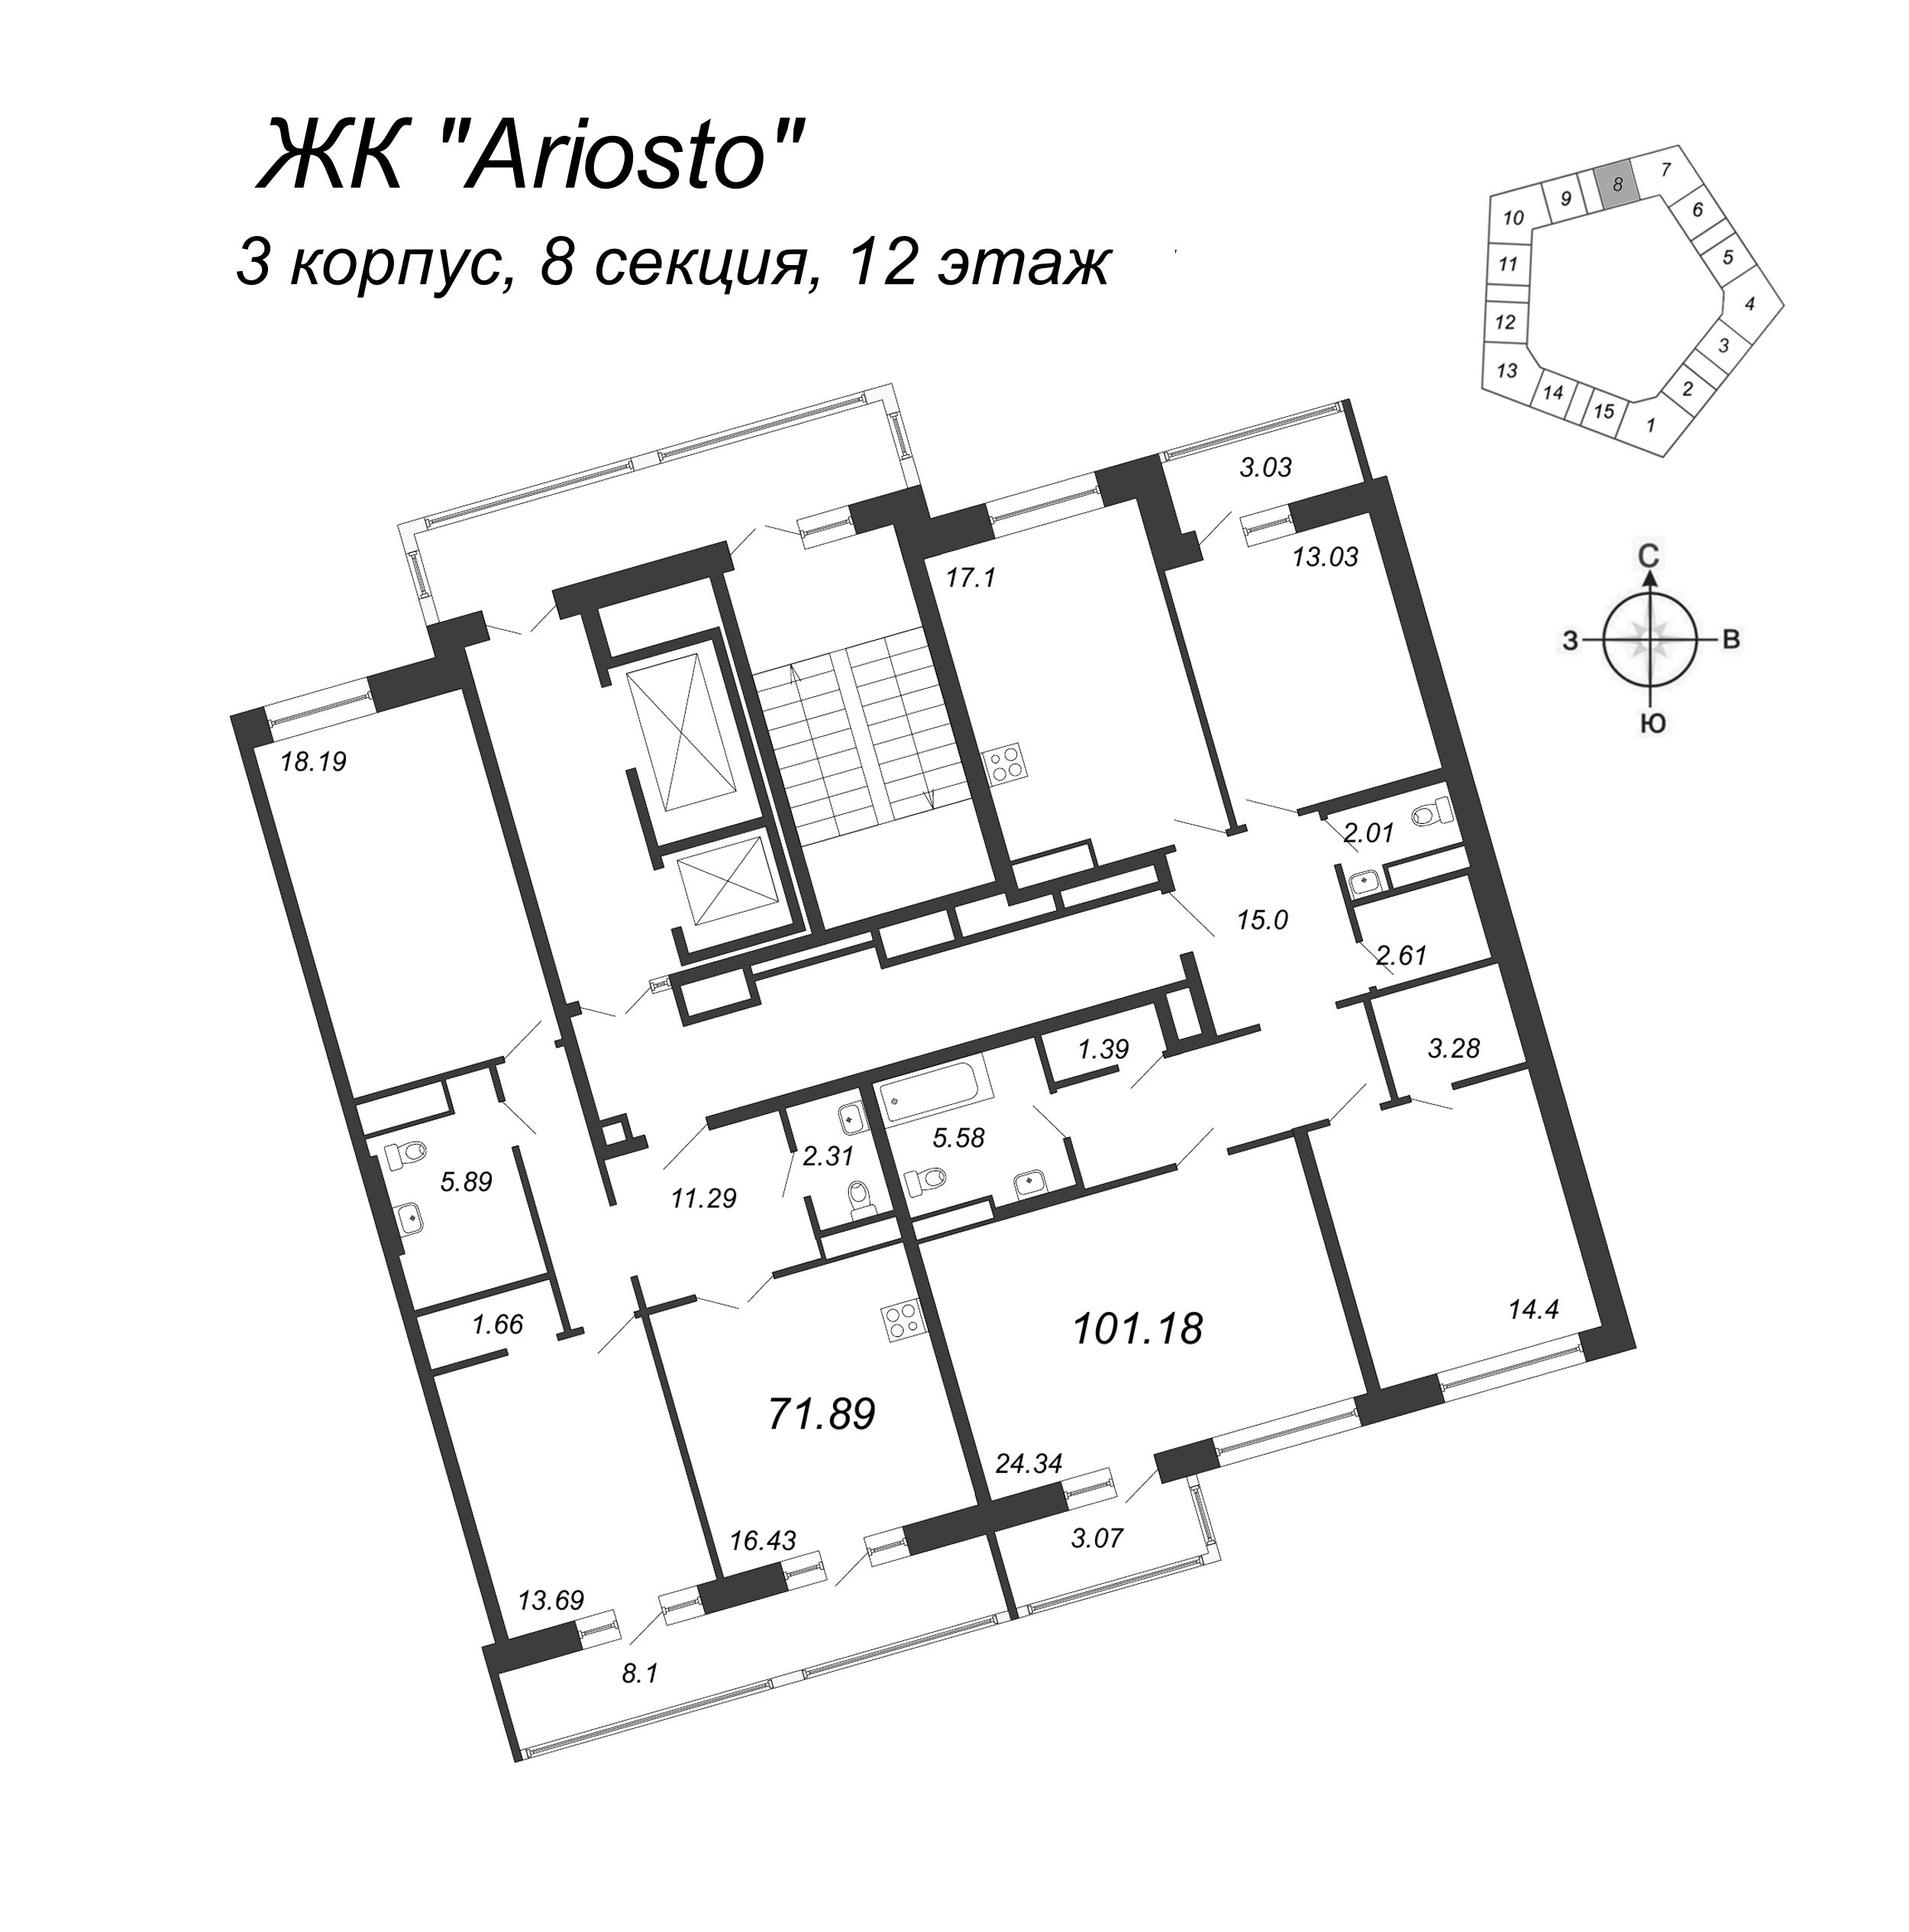 2-комнатная квартира, 71.89 м² в ЖК "Ariosto" - планировка этажа